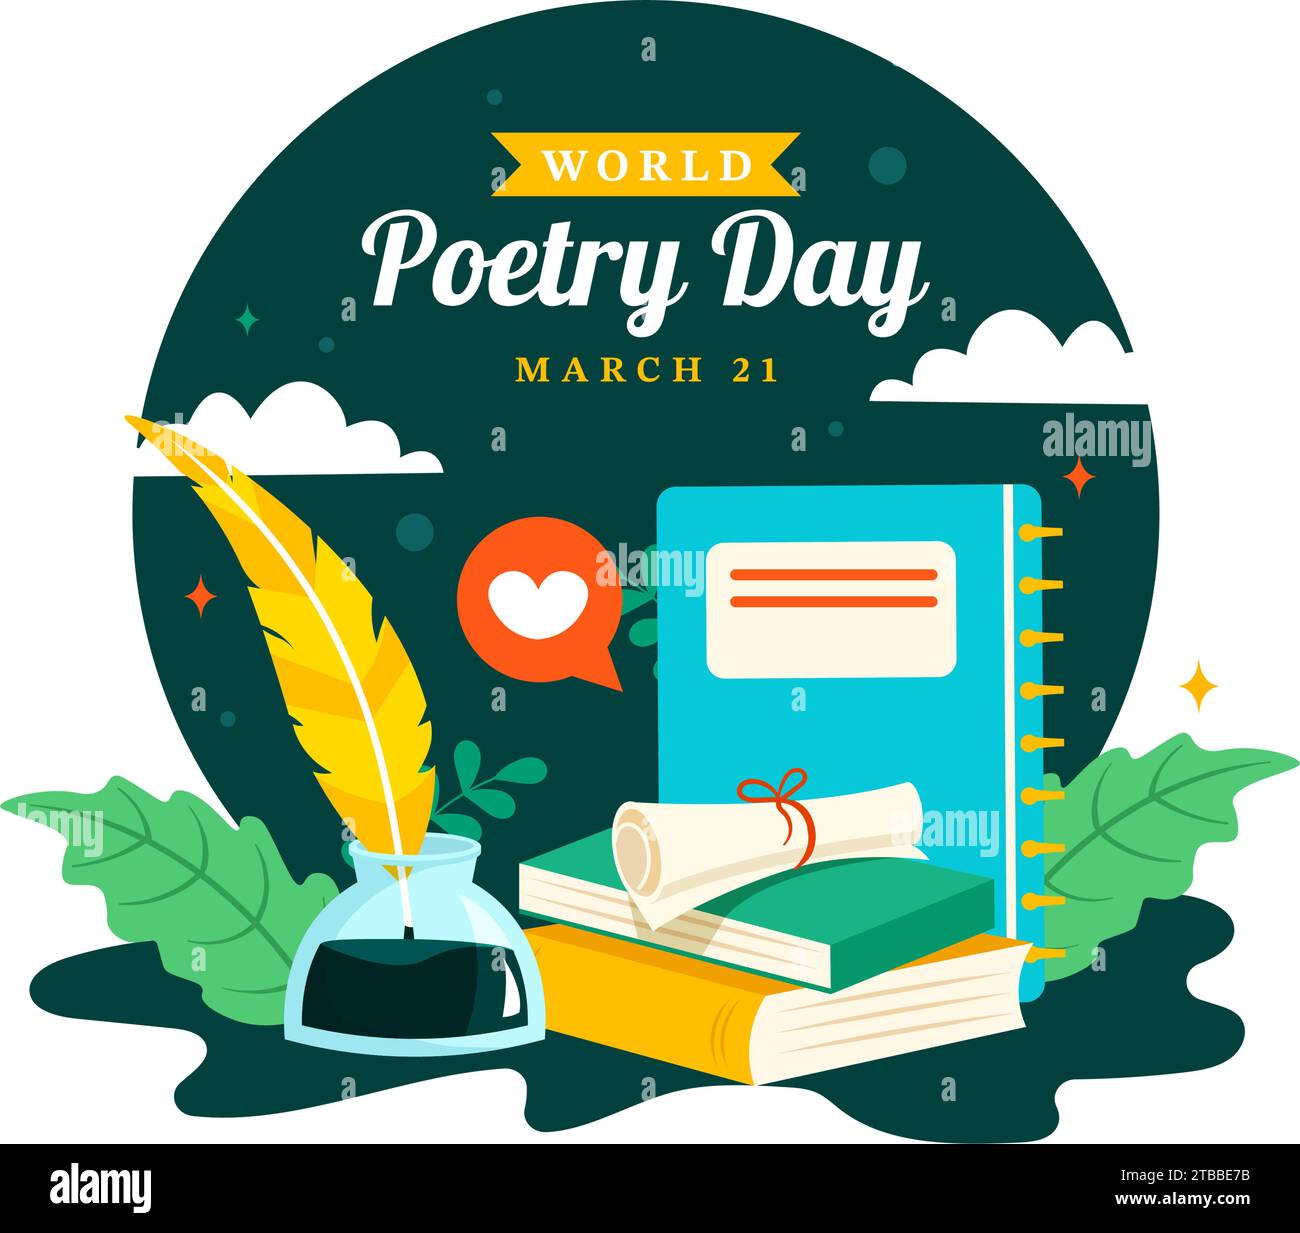 Illustrazione vettoriale della giornata mondiale della poesia il 21 marzo con un Quill, Ink, Paper, Typewriter e Book to Writing in Literature Flat Cartoon background Illustrazione Vettoriale